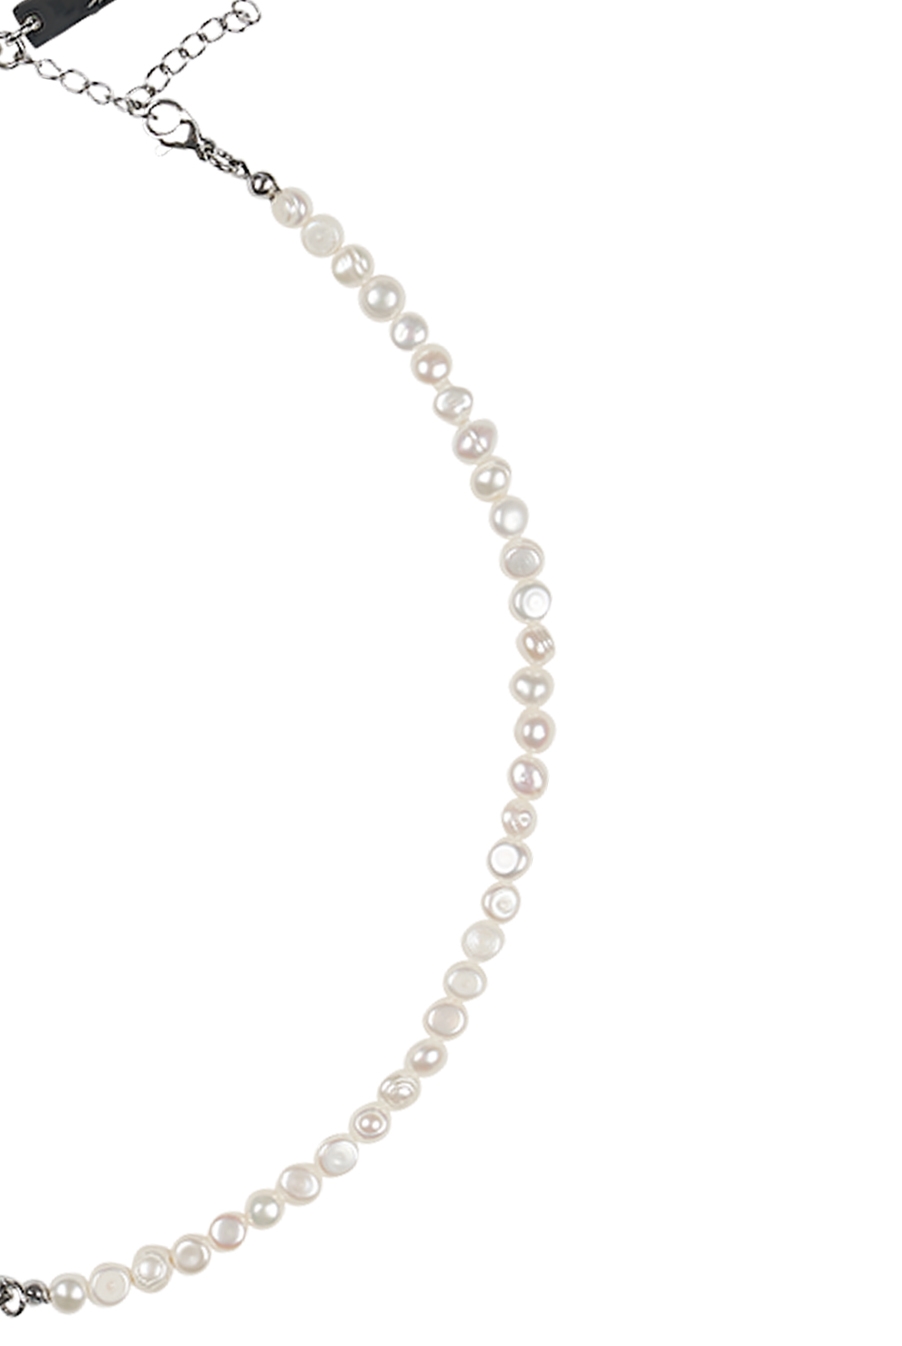 [05월 23일 예약배송] Half & Half Pearl necklace